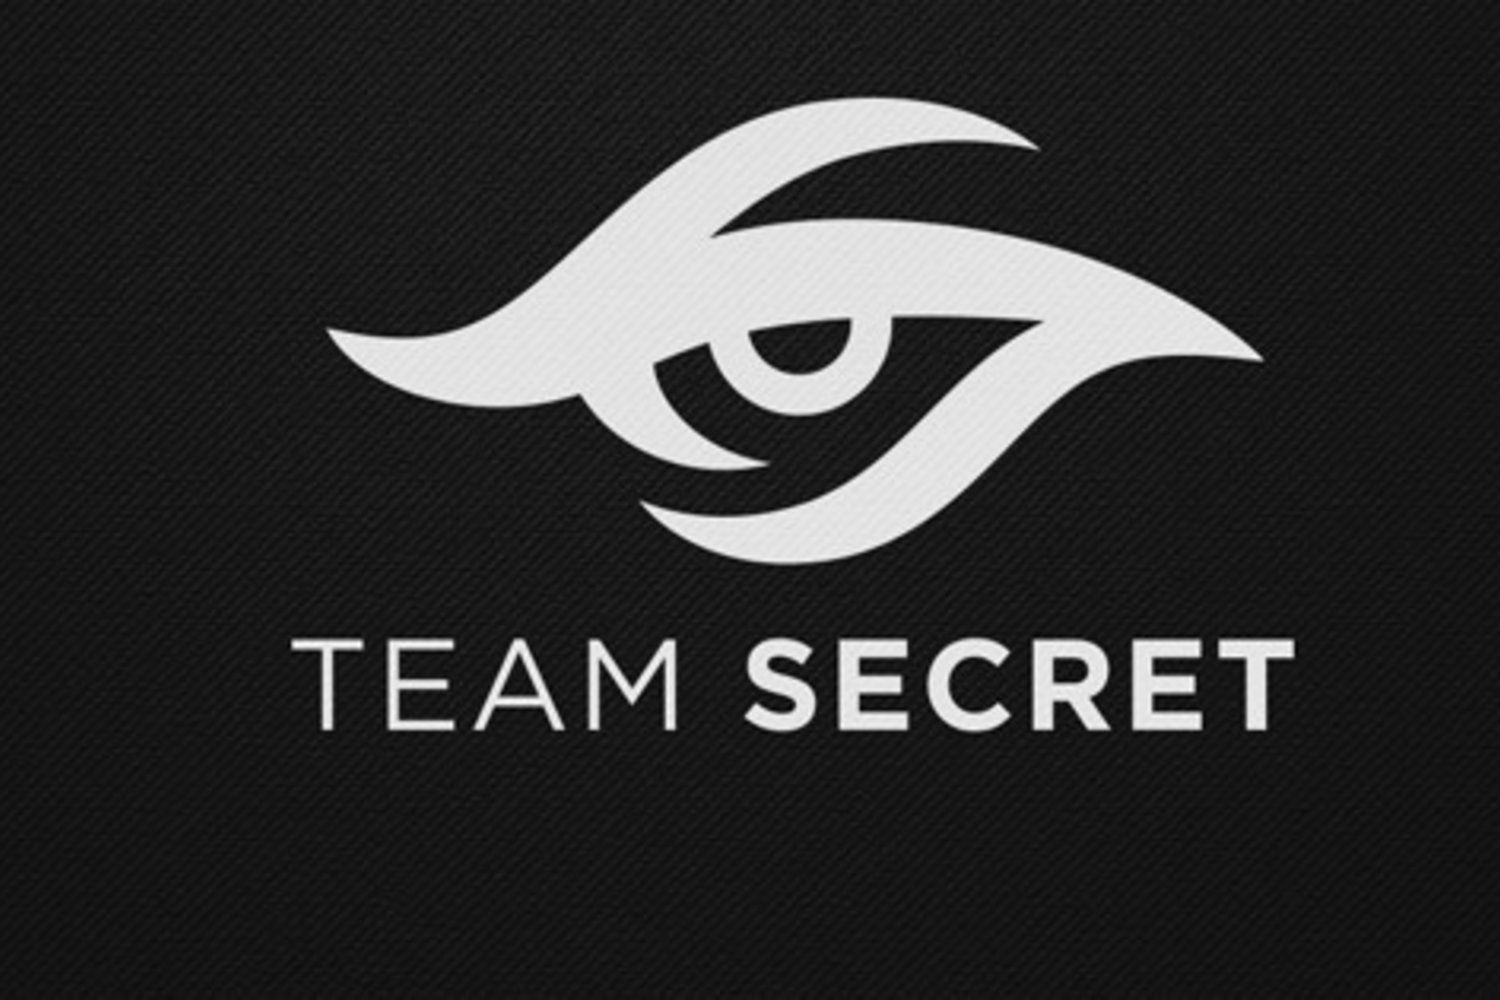 Fng высказался касательно игровой формы Team Secret